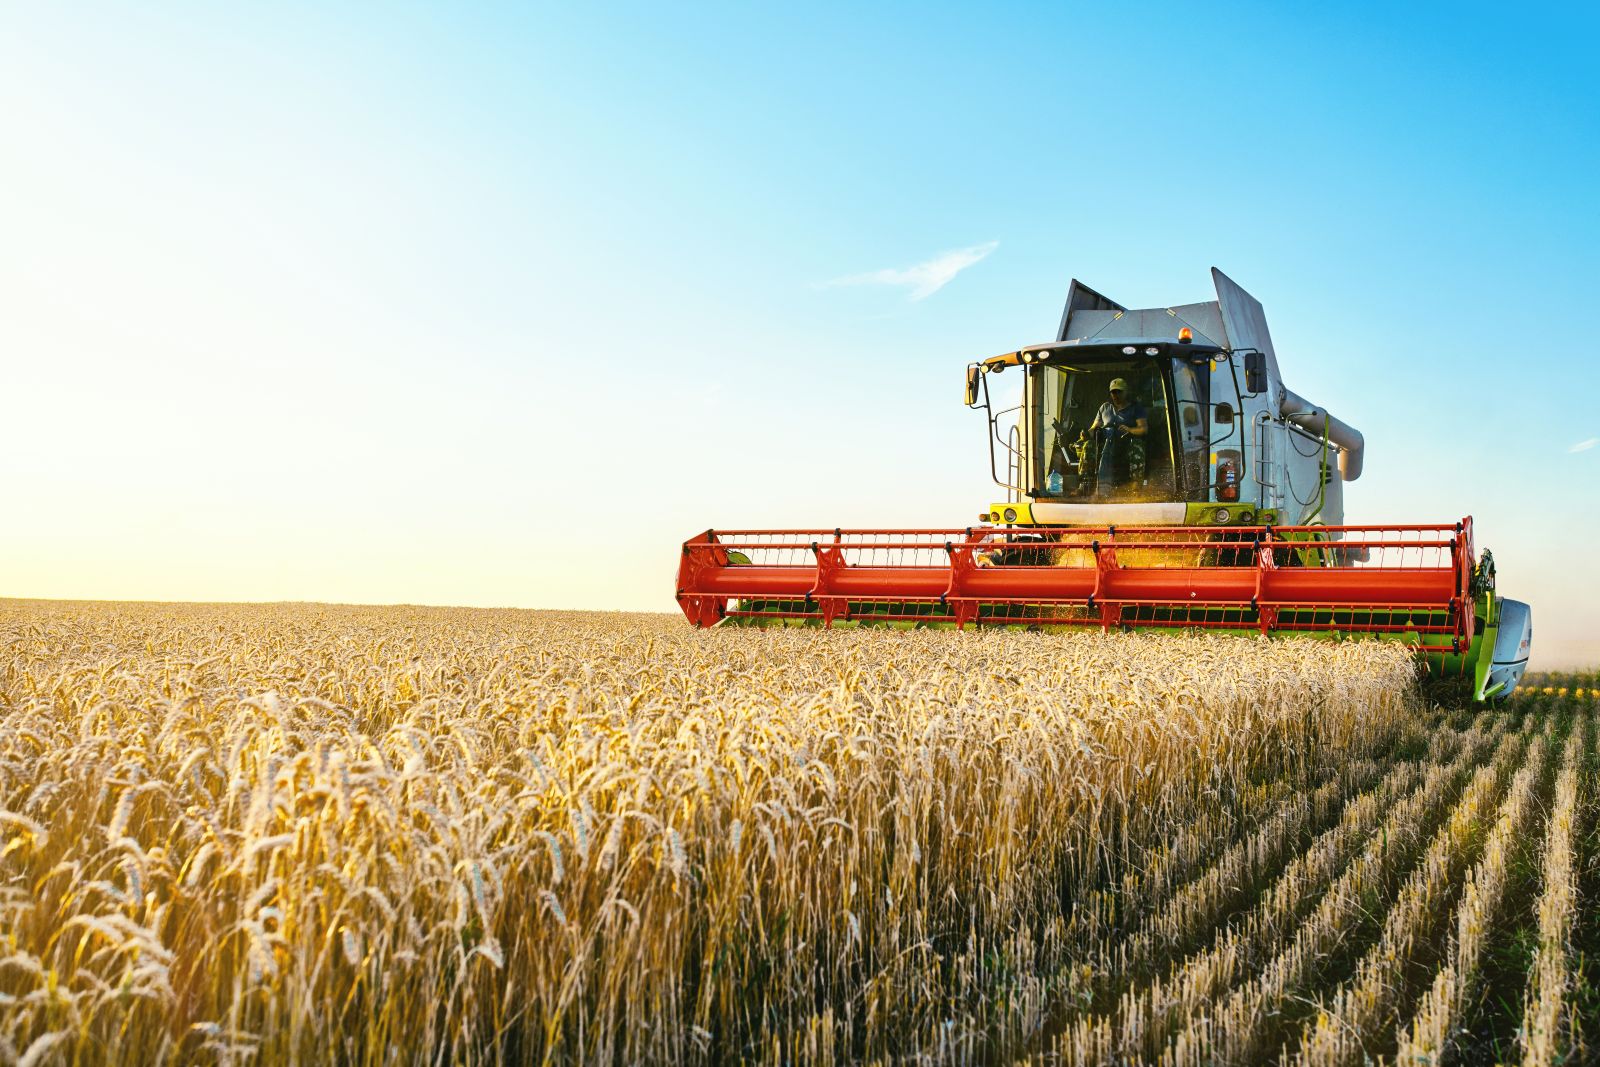 Farming - Harvestor at work by Aleksandr Rybalko via Shutterstock